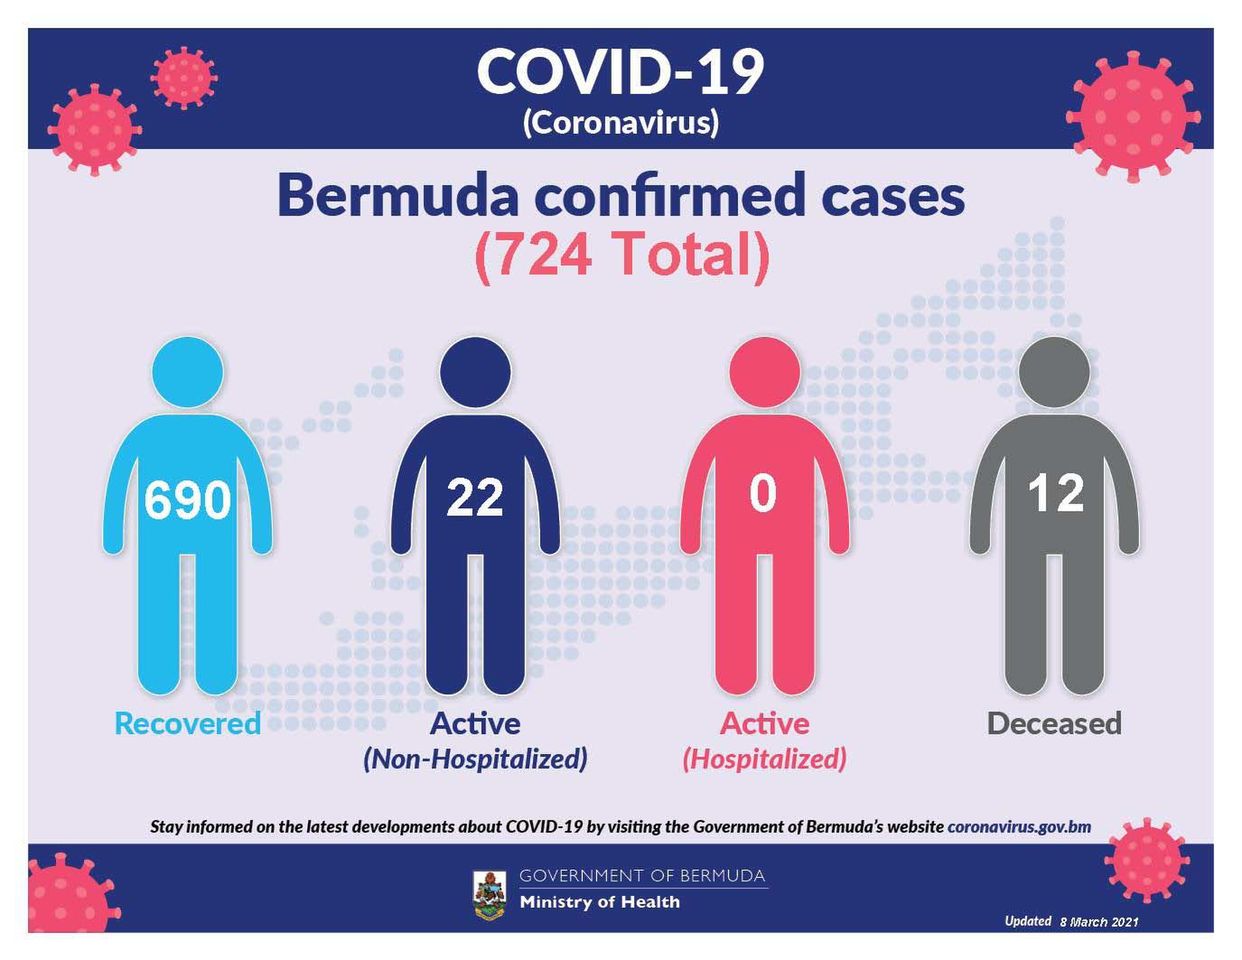 2 new COVID-19 reported in Bermuda, 8 March 2021